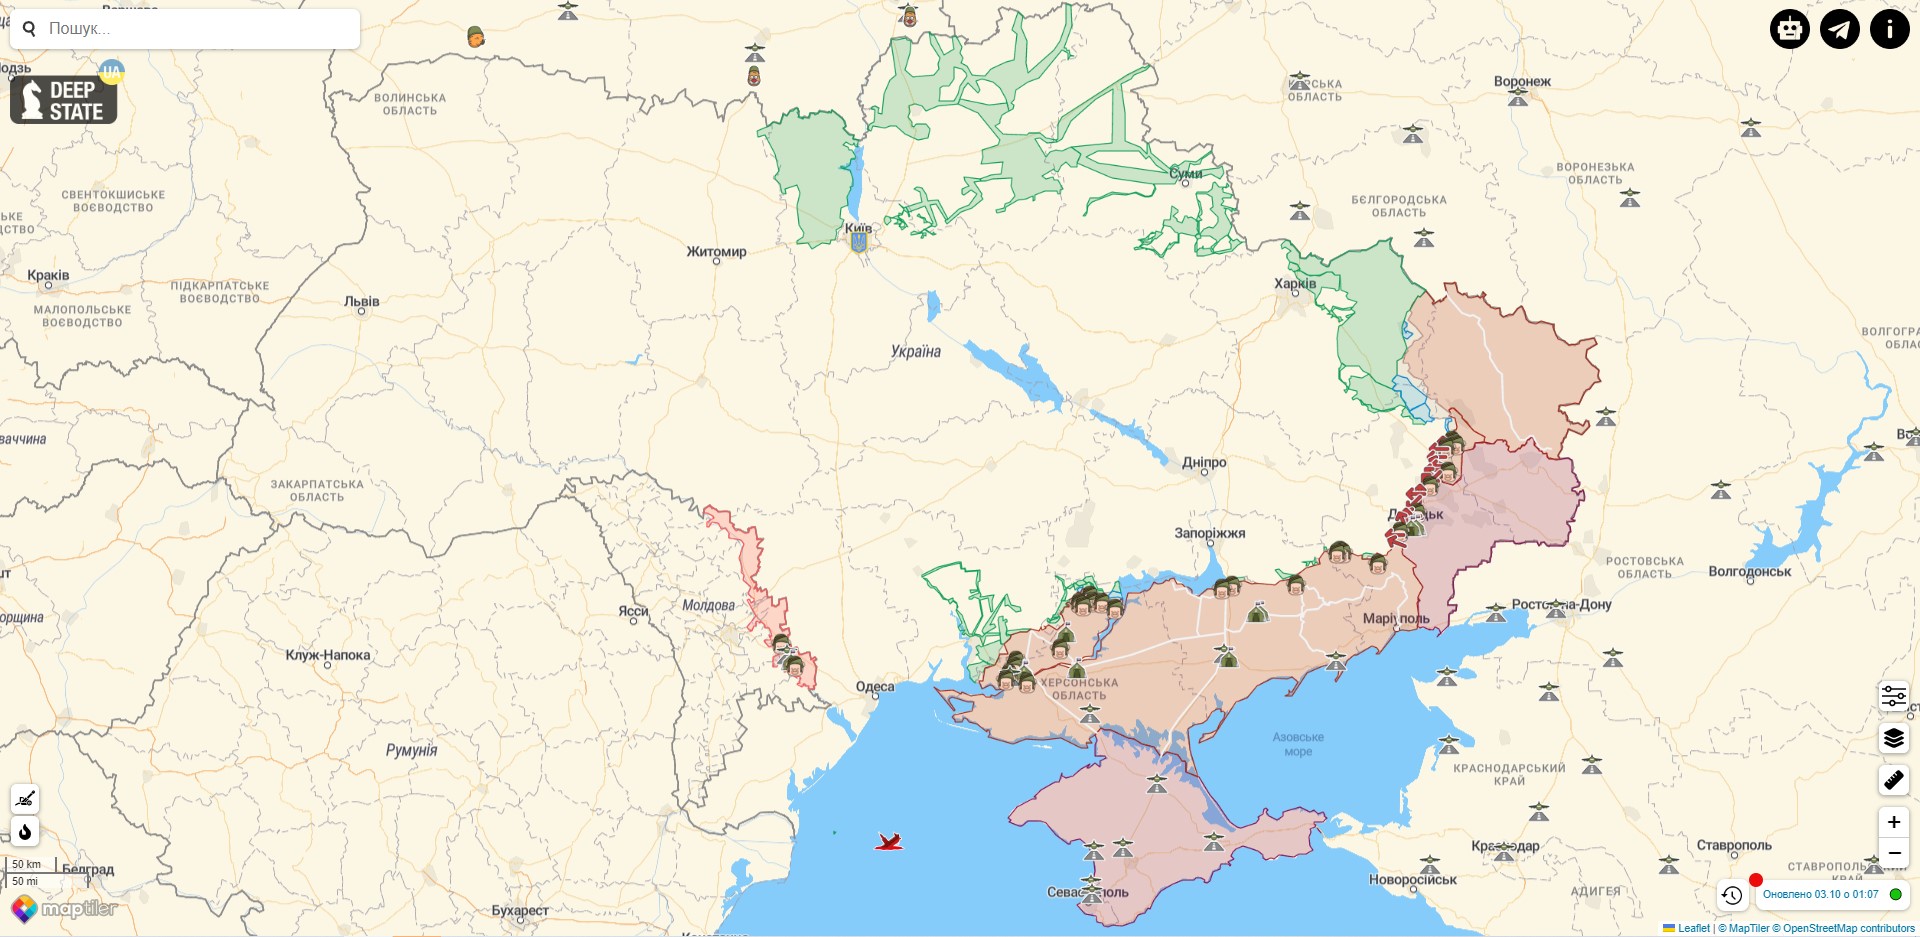 Боевые действия в Украине против РФ на 3 октября